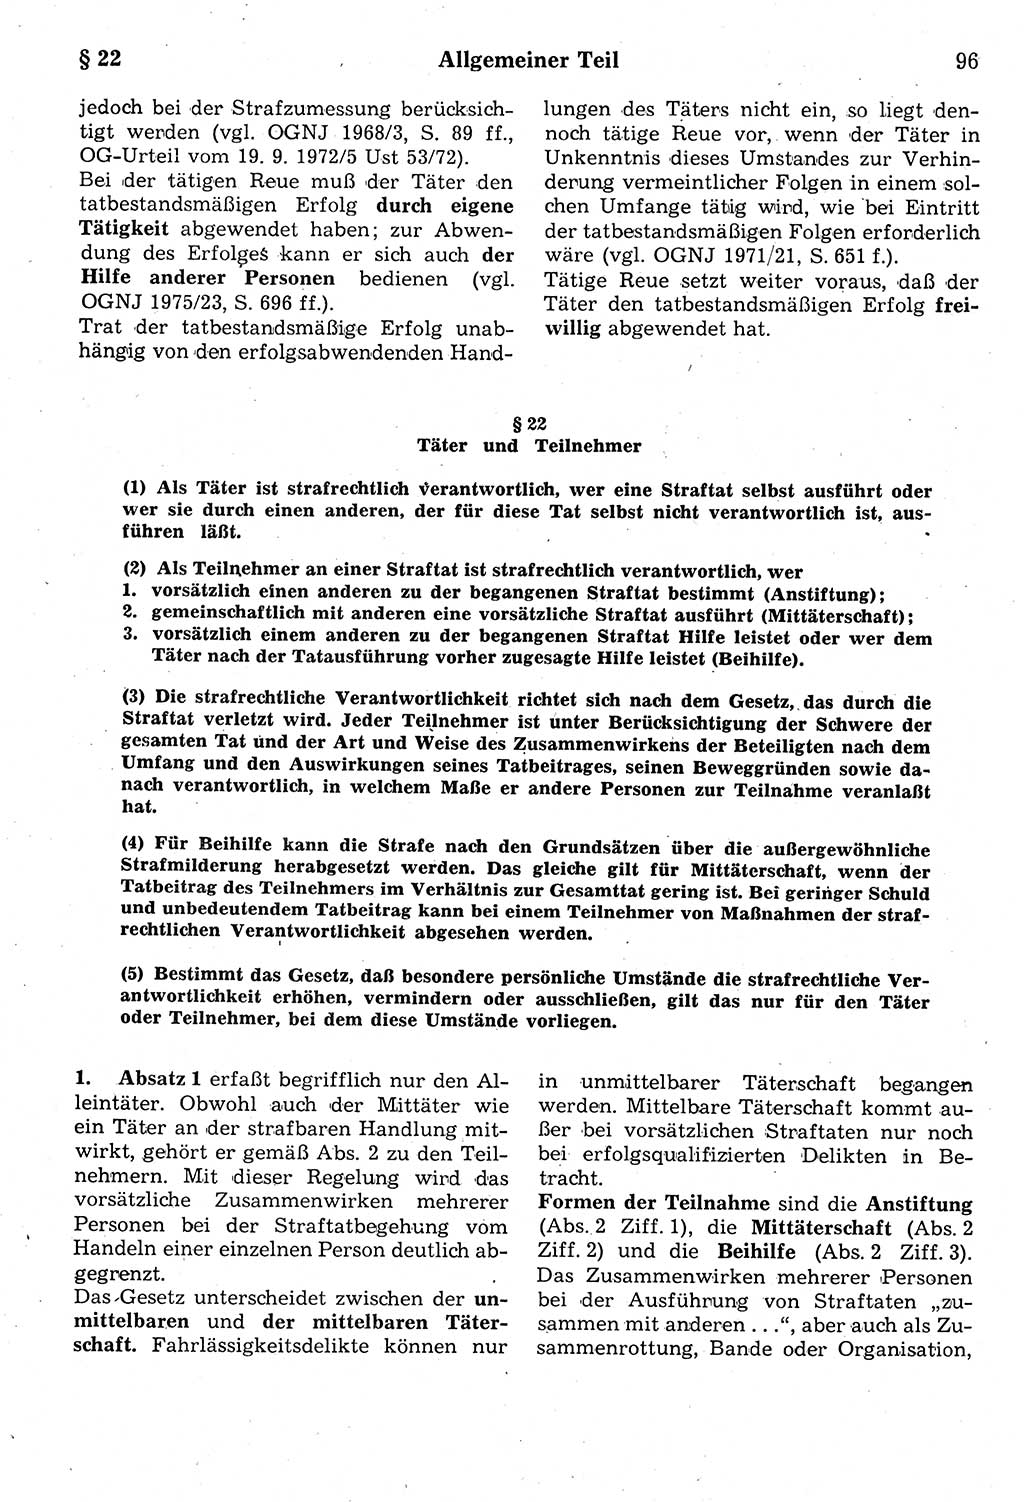 Strafrecht der Deutschen Demokratischen Republik (DDR), Kommentar zum Strafgesetzbuch (StGB) 1987, Seite 96 (Strafr. DDR Komm. StGB 1987, S. 96)